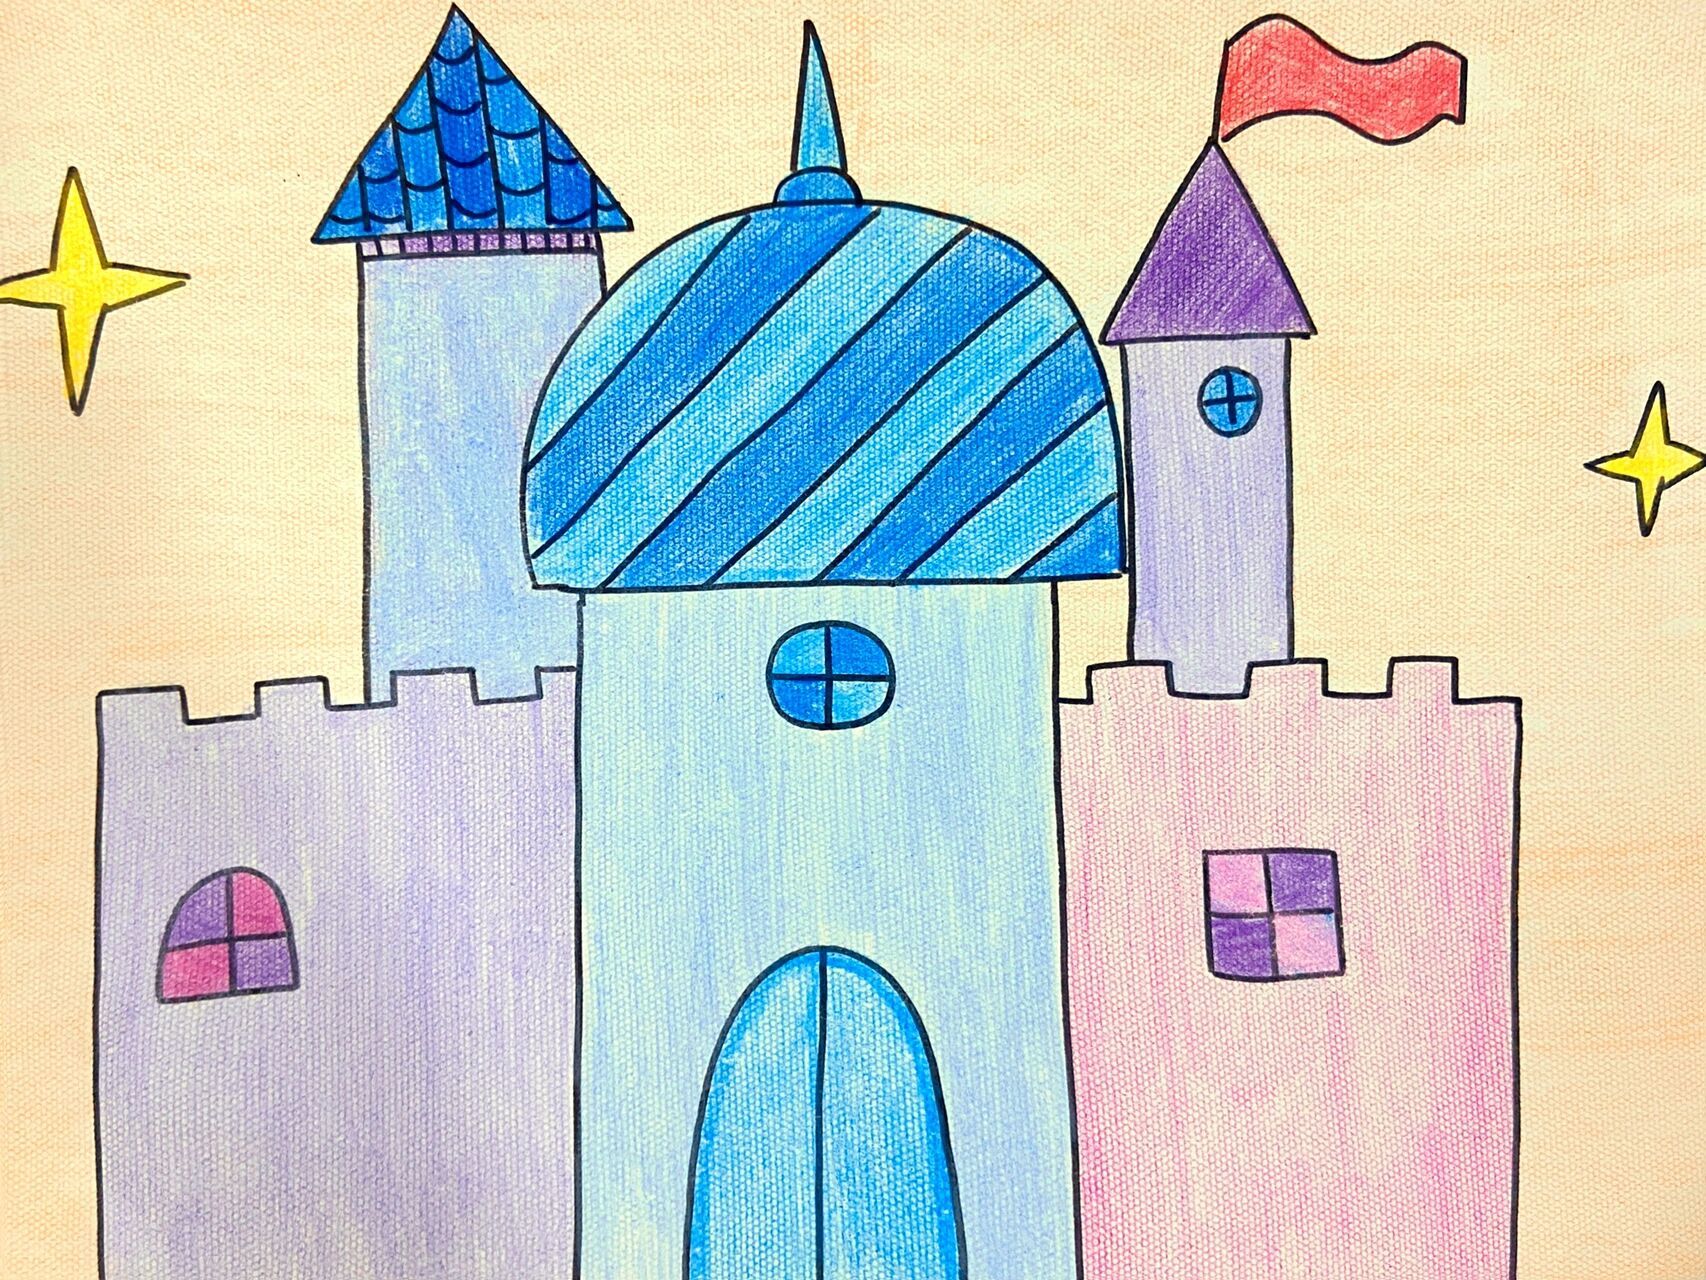 儿童公园简笔画城堡图片